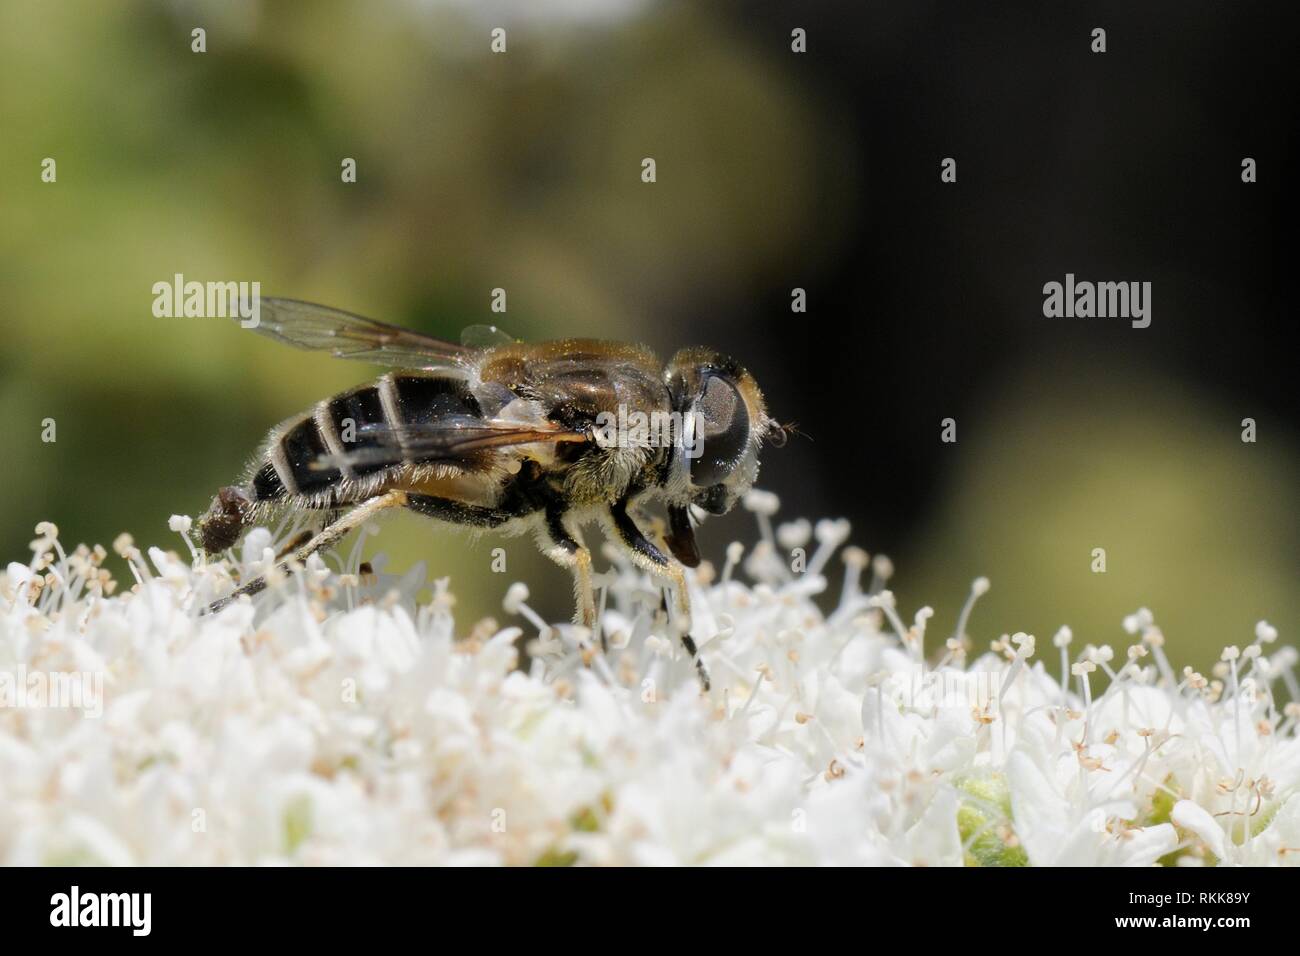 Passare il puntatore del mouse-fly (Eristalis arbustorum) alimentazione dal Cretan origano fiori (Origanum onites), Lesbo / Lesbo, Grecia, maggio. Foto Stock